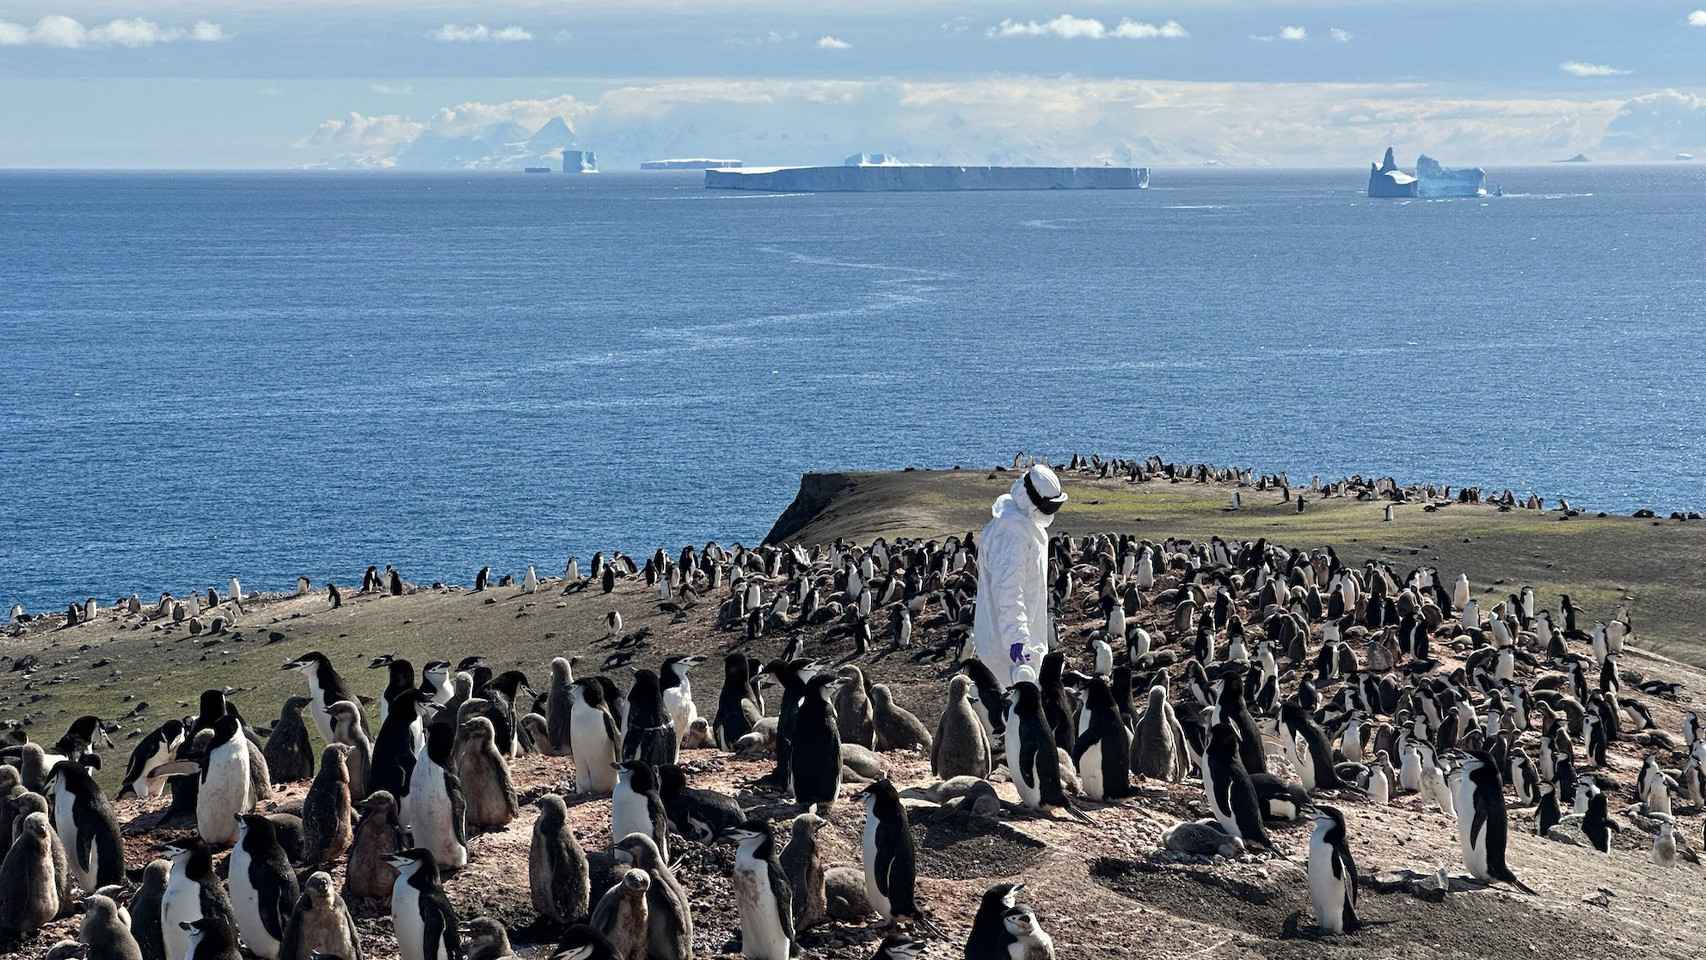 Los virólogos recogen muestras ambientales en la pingüinera para analizarlas al día siguiente.